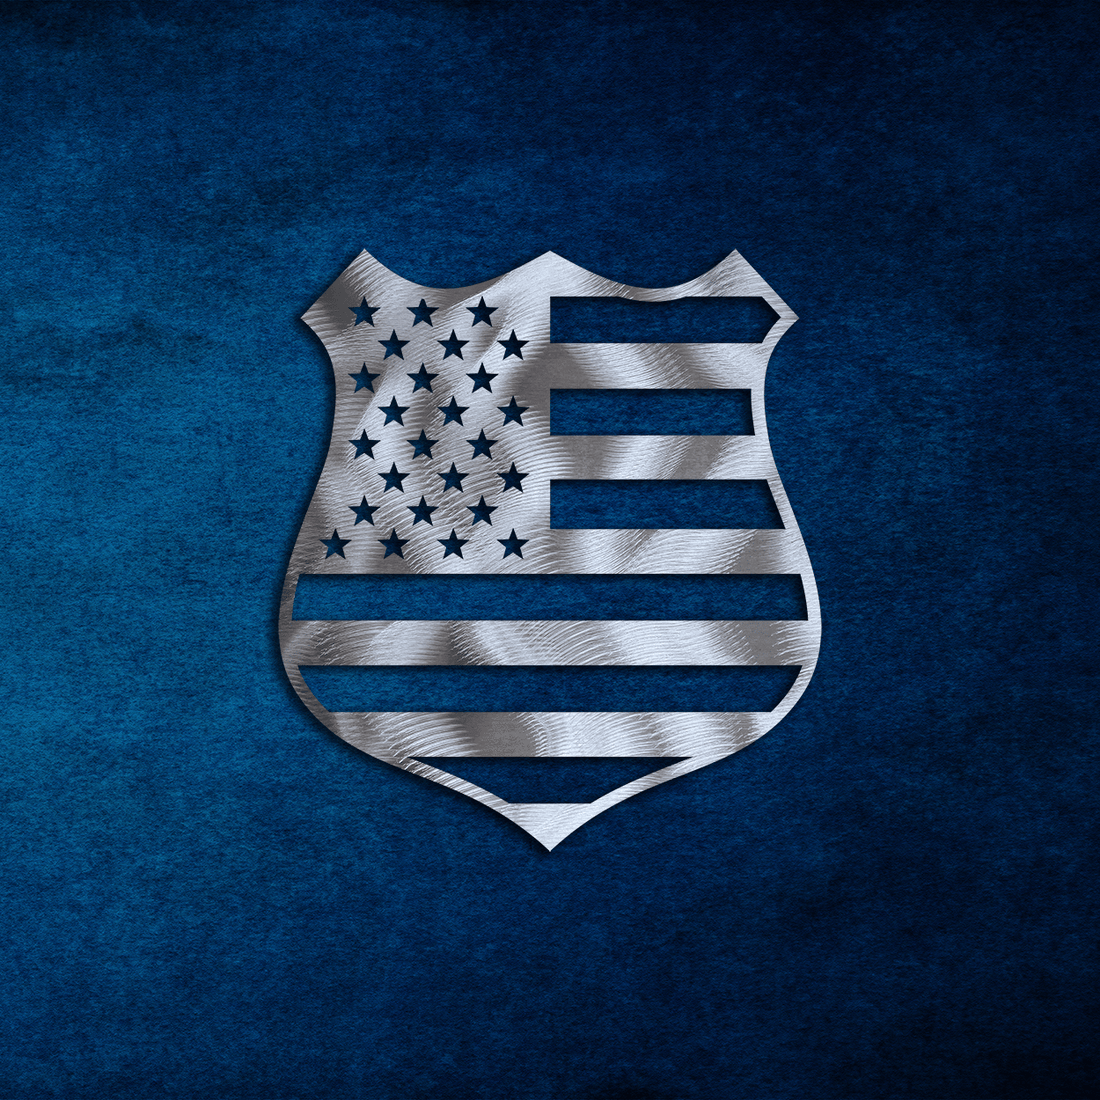 Police Shield